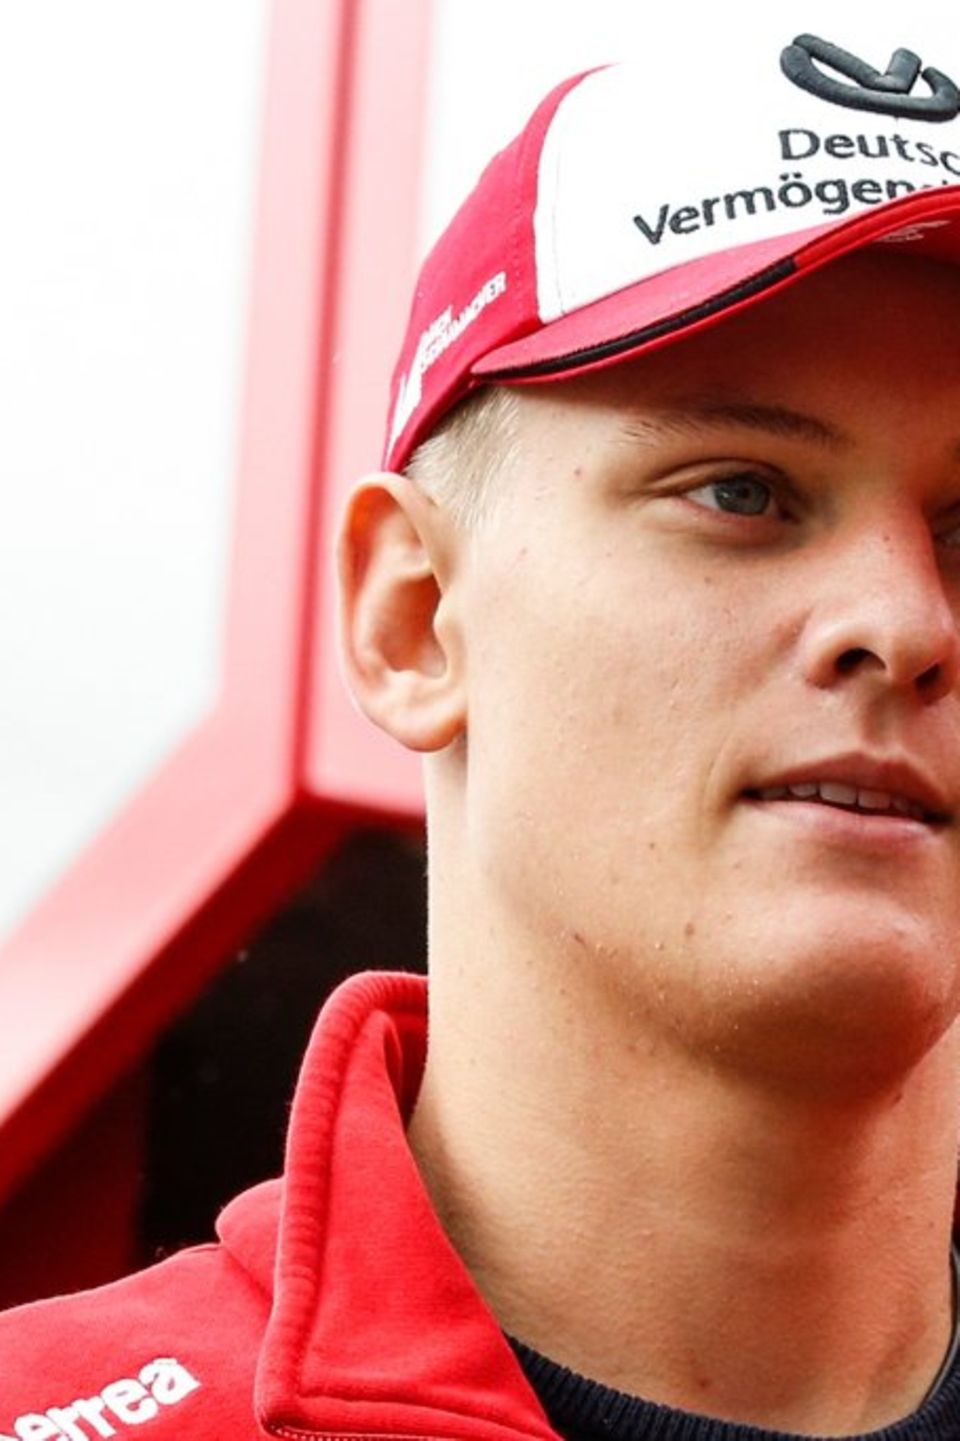 Der Sohn von Michael Schumacher will vor allem mit seinem Rennsport im Fokus stehen. Doch nun zeigt er sich glücklich an der S